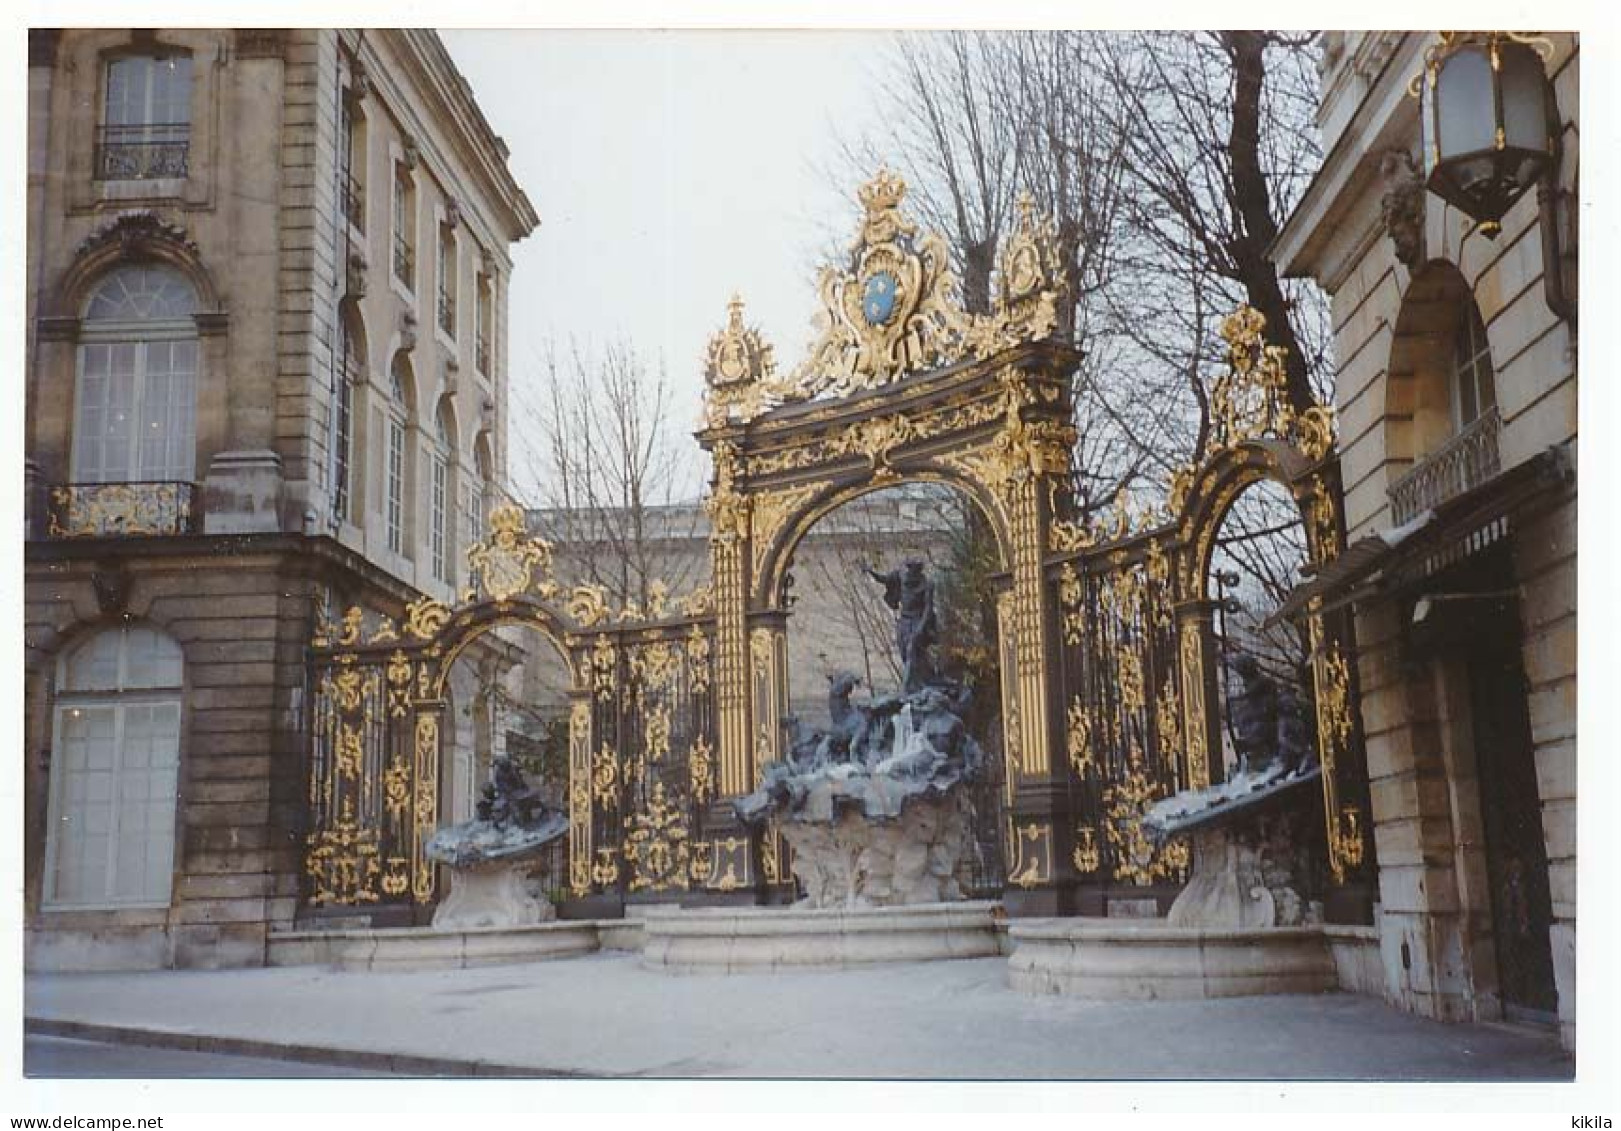 Photo 13,9 X ,4  Meurthe-et-Moselle NANCY Place Stanislas Fontaine De Neptune  Tirage En Décembre 1993 - Nancy